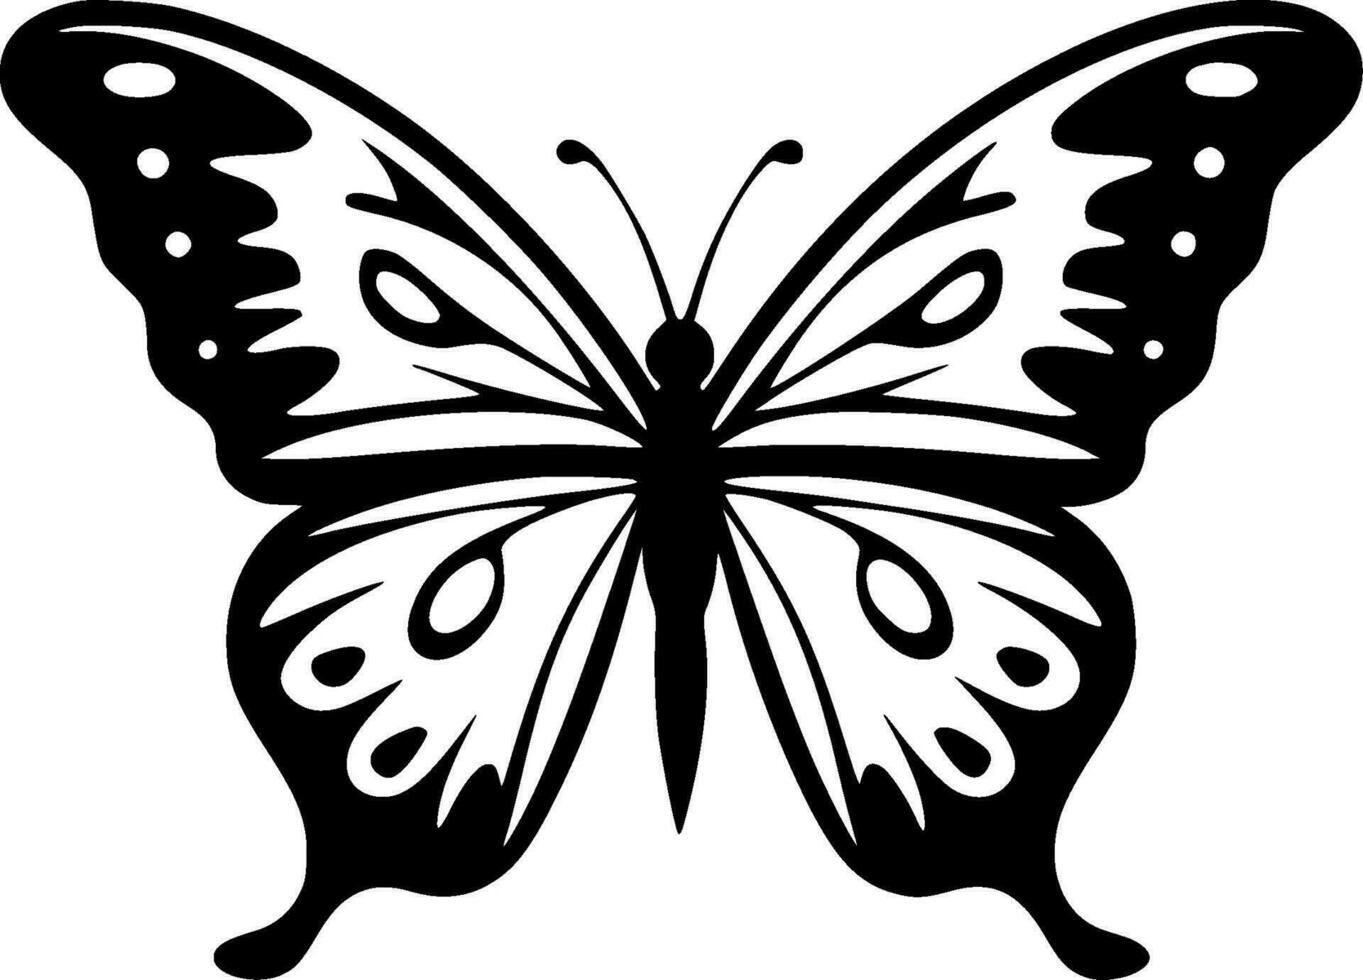 vlinder, zwart en wit vector illustratie